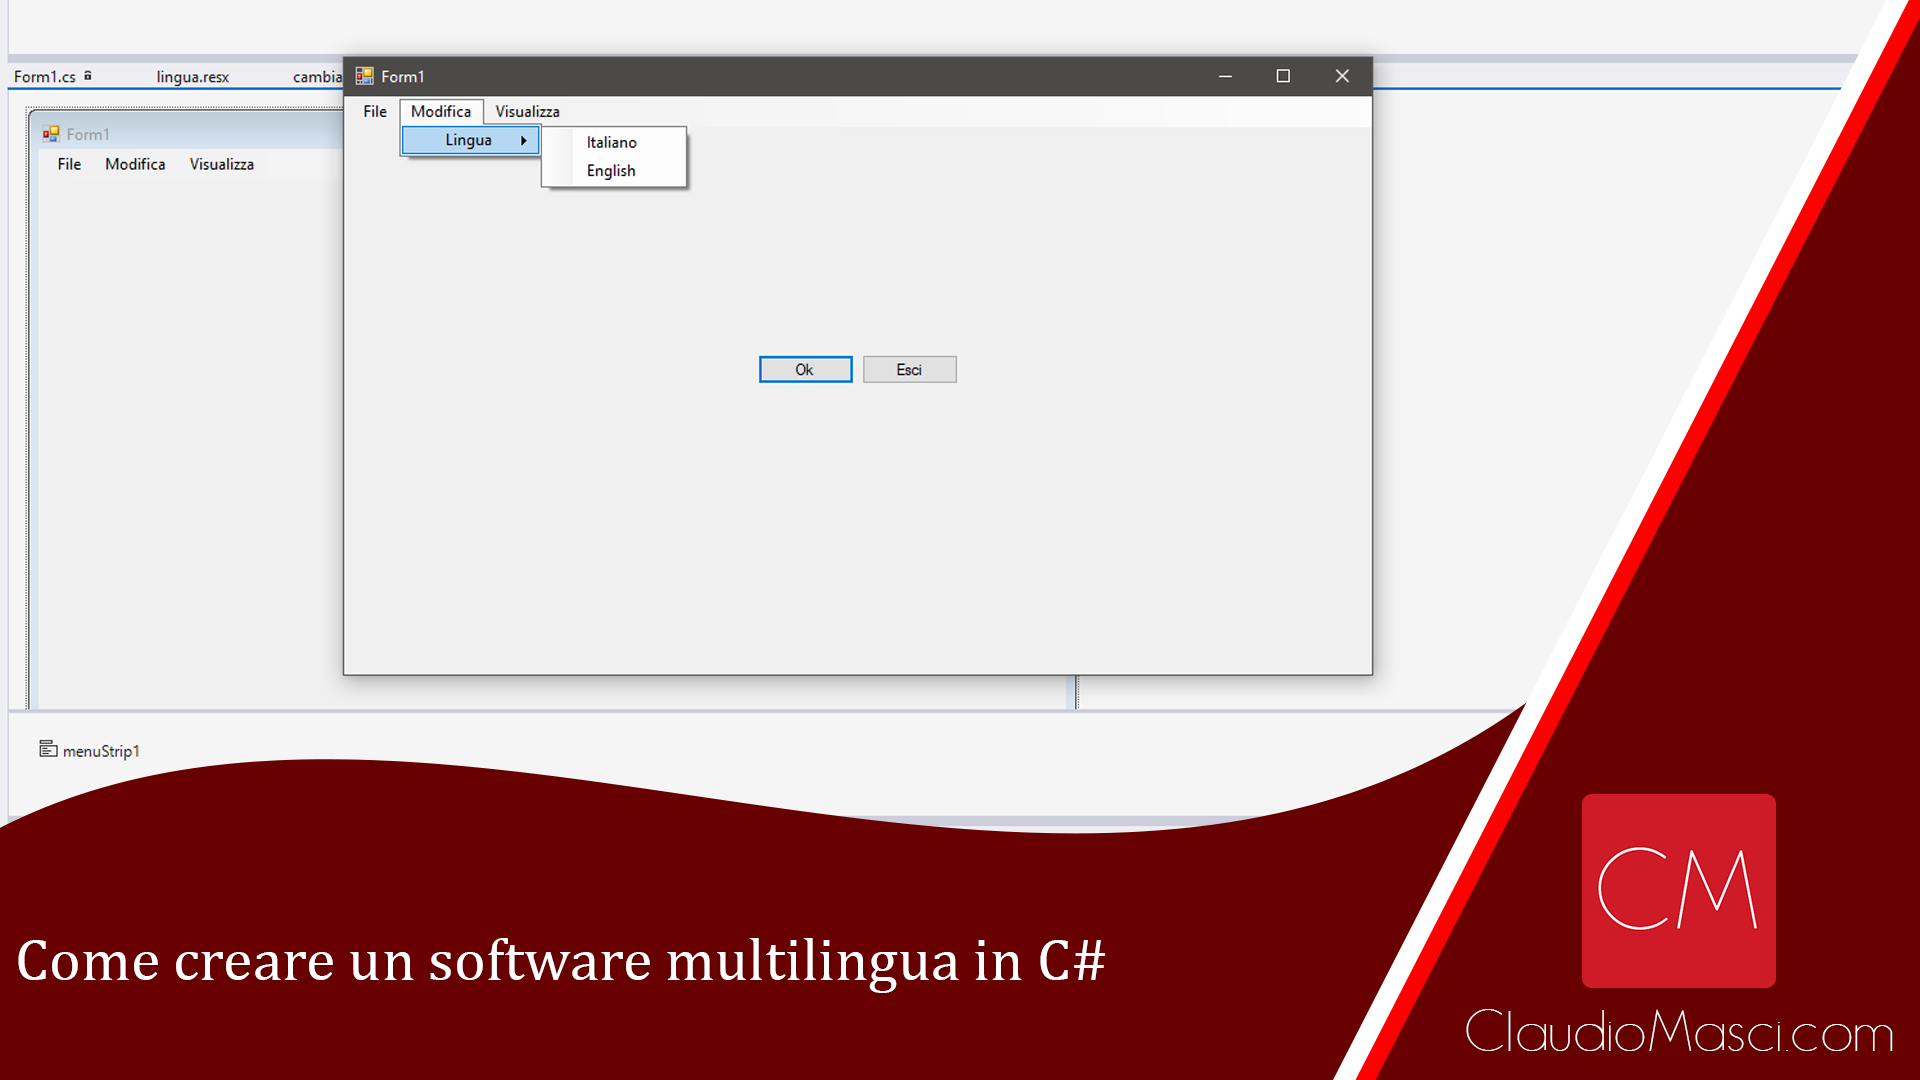 Come creare un software multilingua in C#